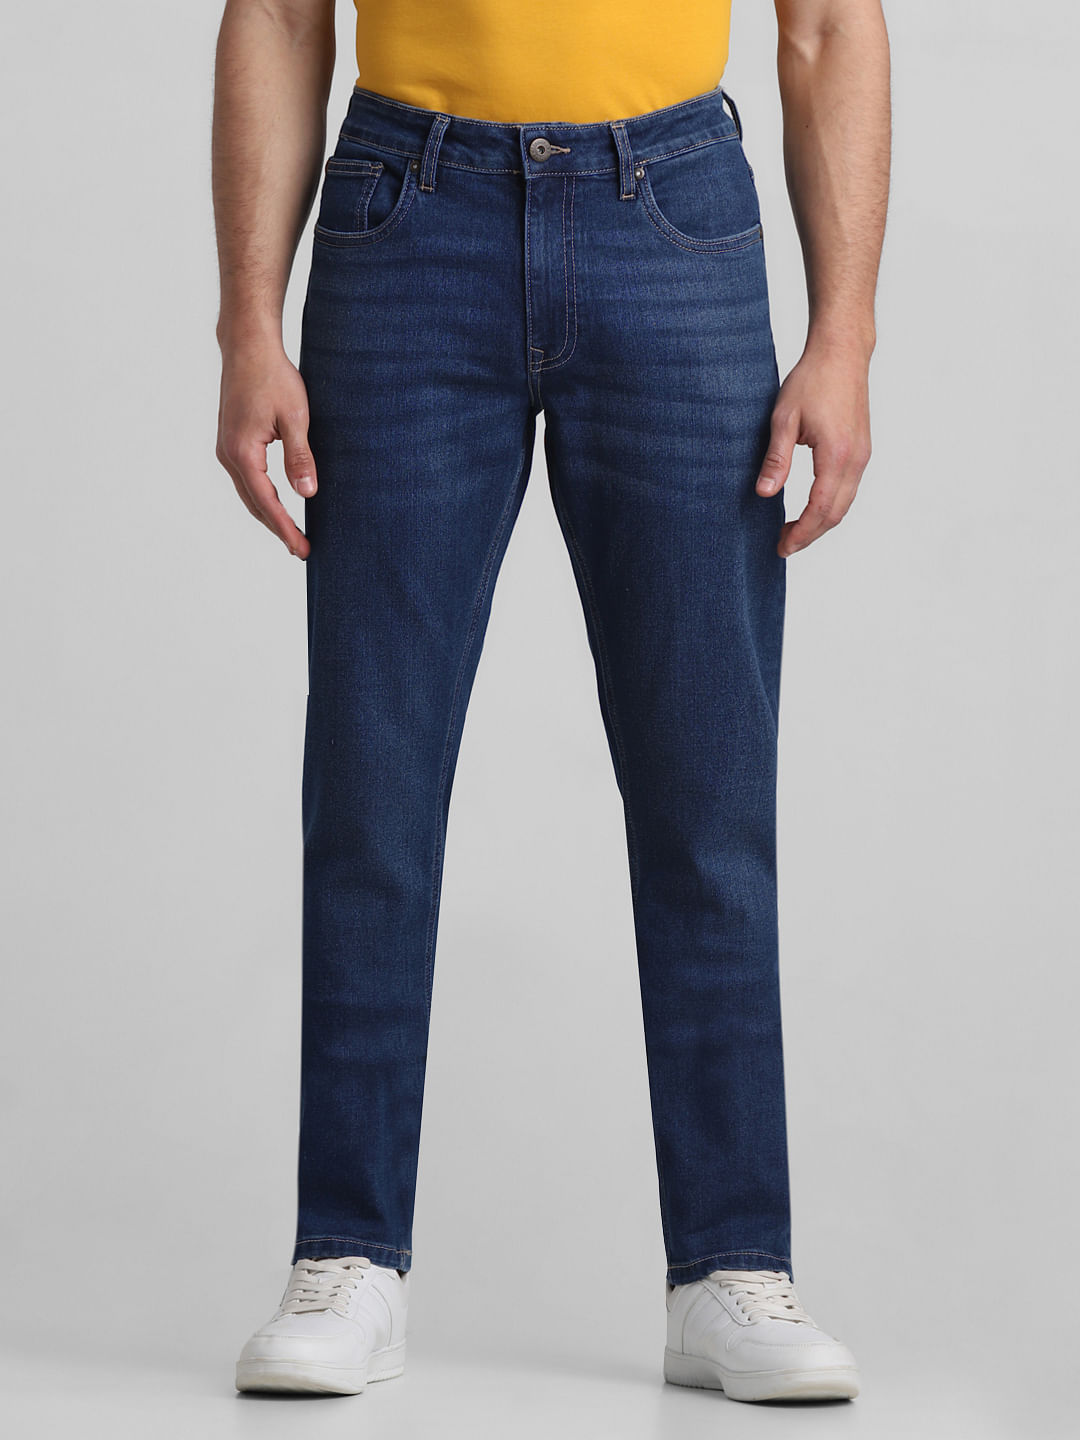 Curve - High Waist Jeans in Dark Blue Denim – Carraig Donn